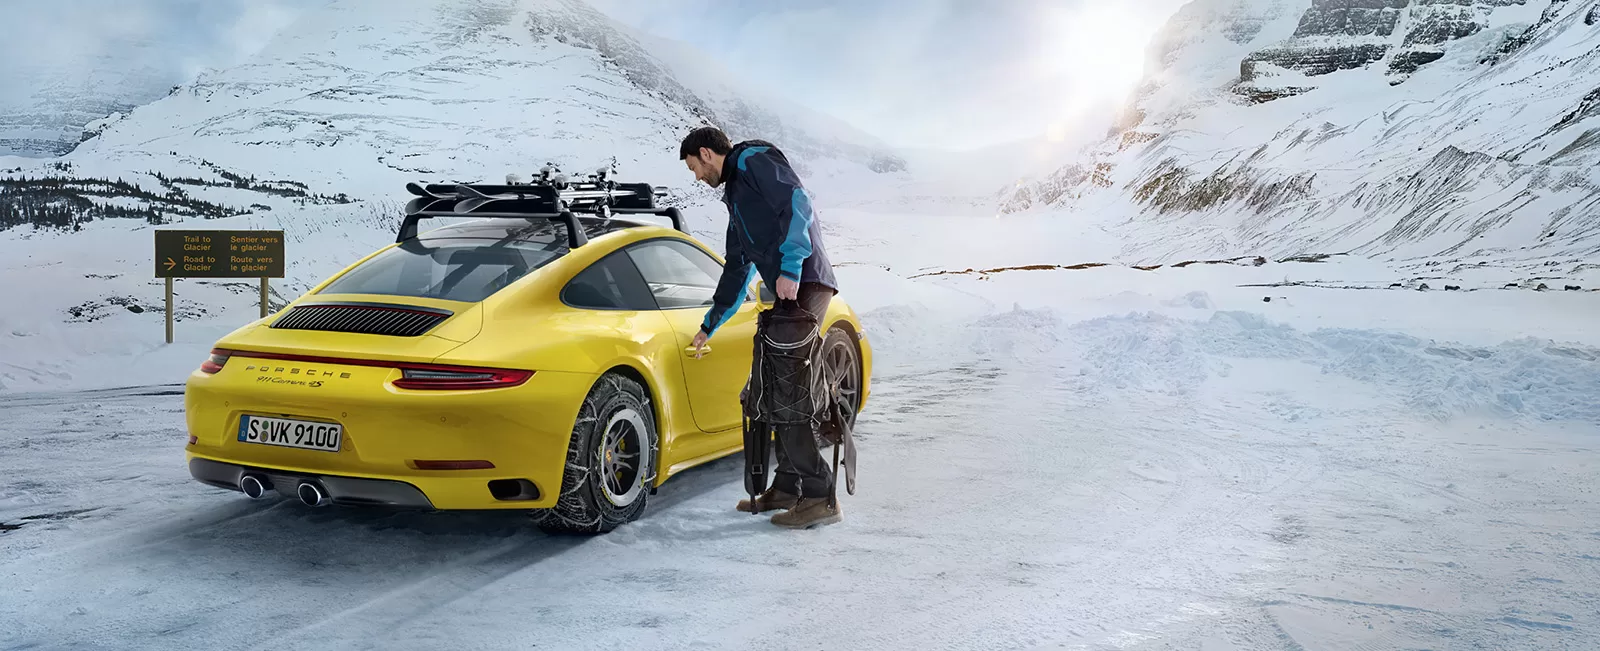 Успейте приобрести сейчас аксессуары Porsche с выгодой до -30%.